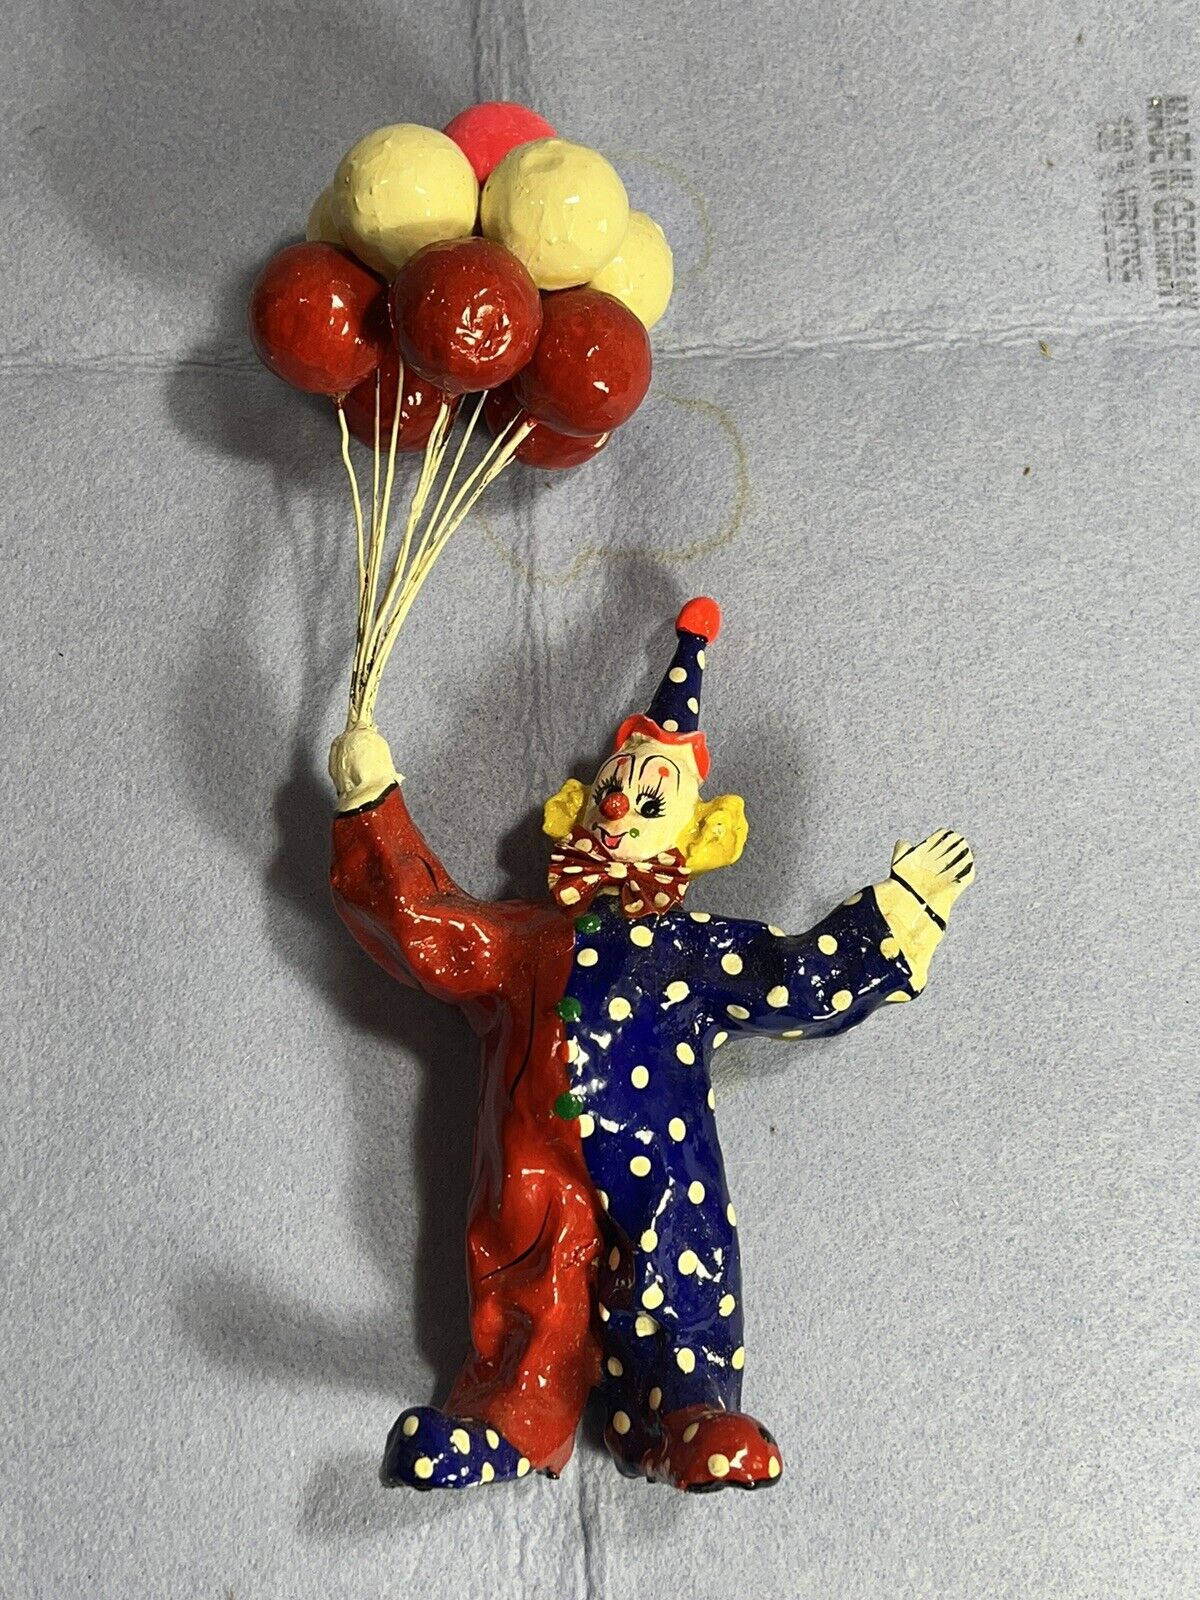 Paper Mache Vintage 11” Clown W/Baloons - Ex. New Condition - Vibrant Colors